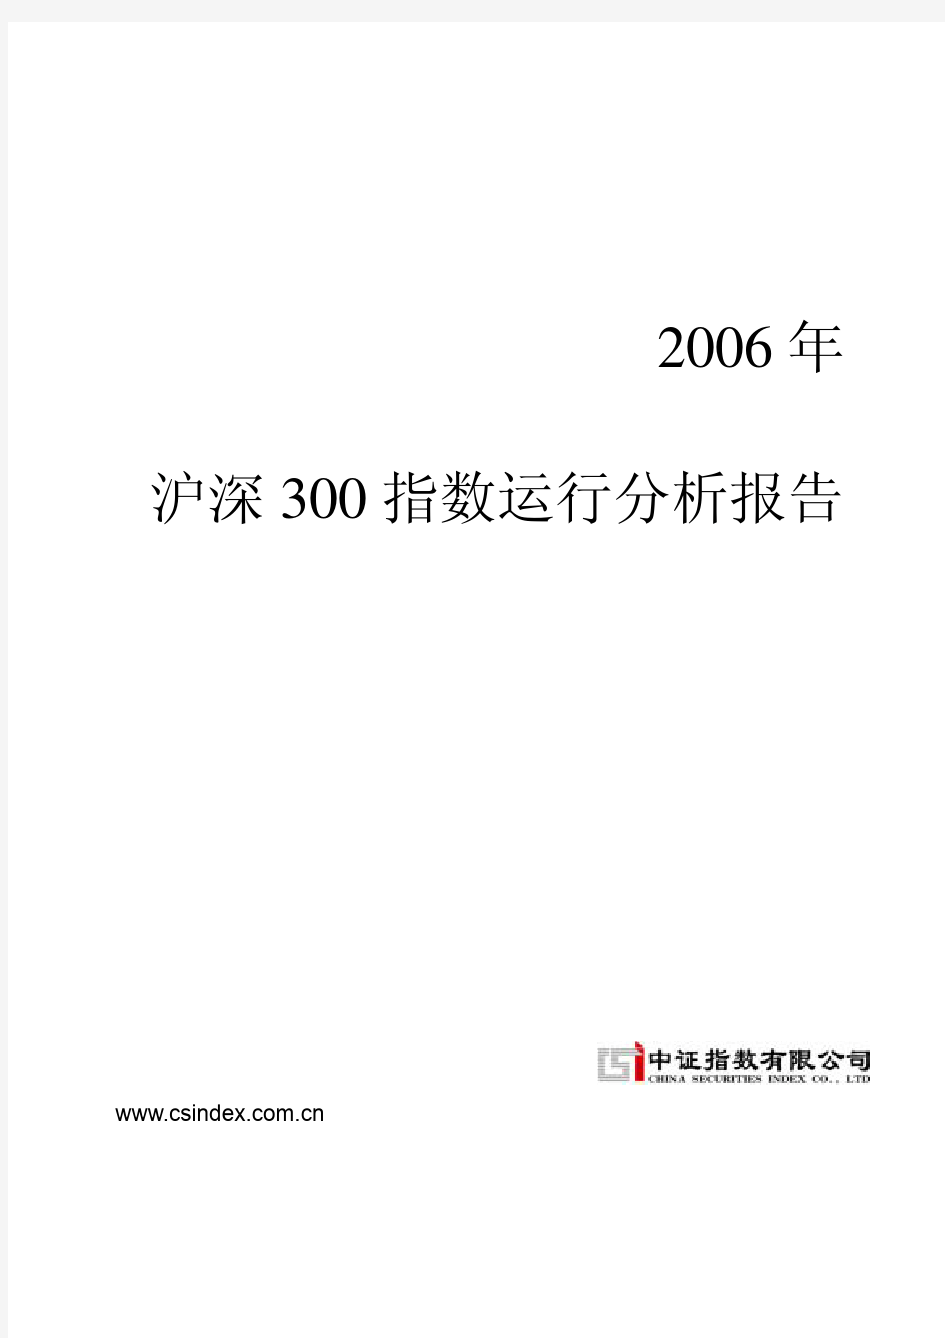 2006年沪深300指数运行分析报告